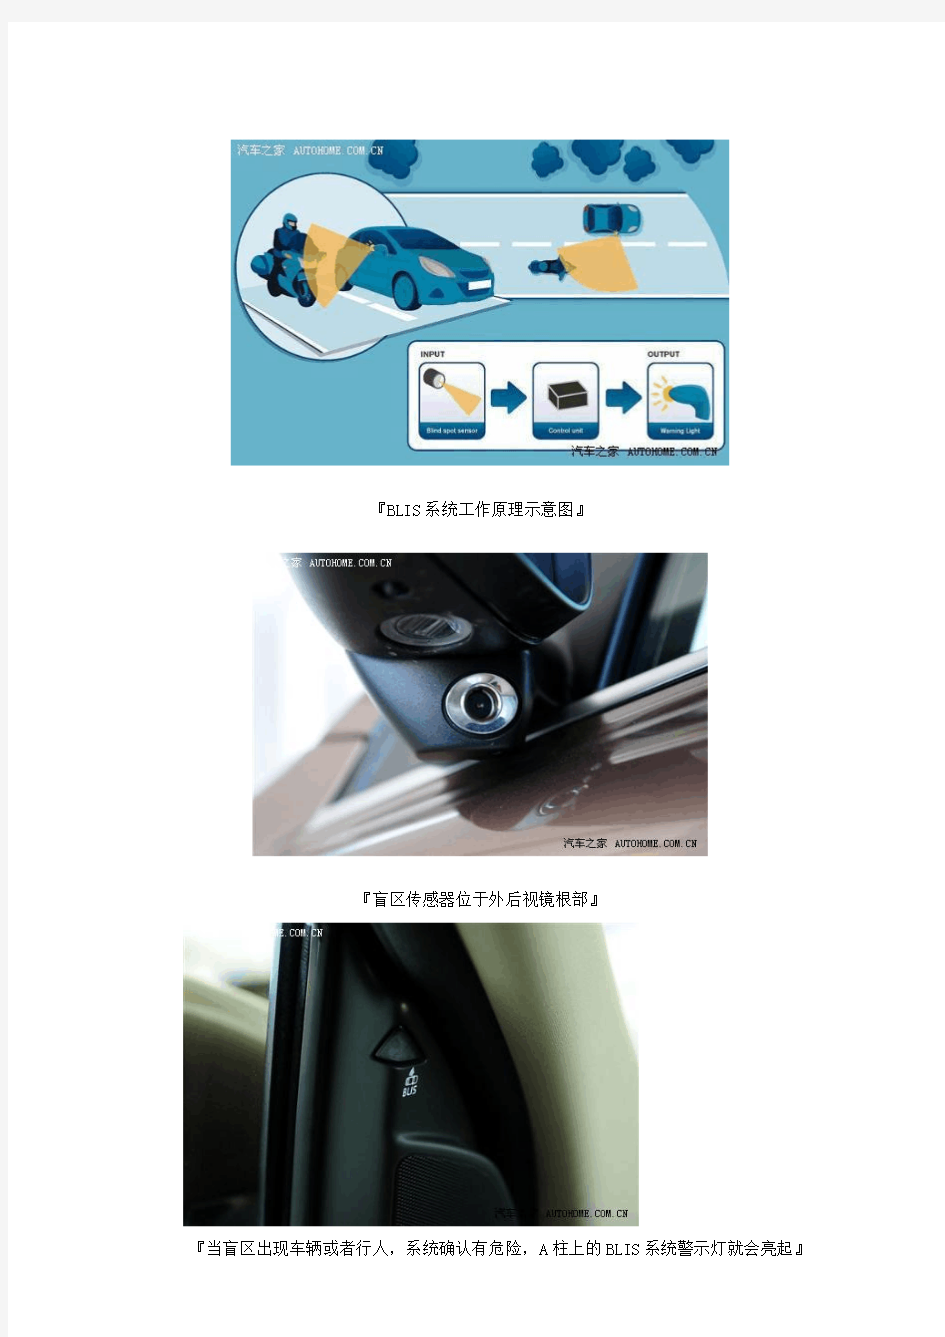 汽车安全装备-并线辅助或盲区监测或侧向辅助原理介绍(多图)